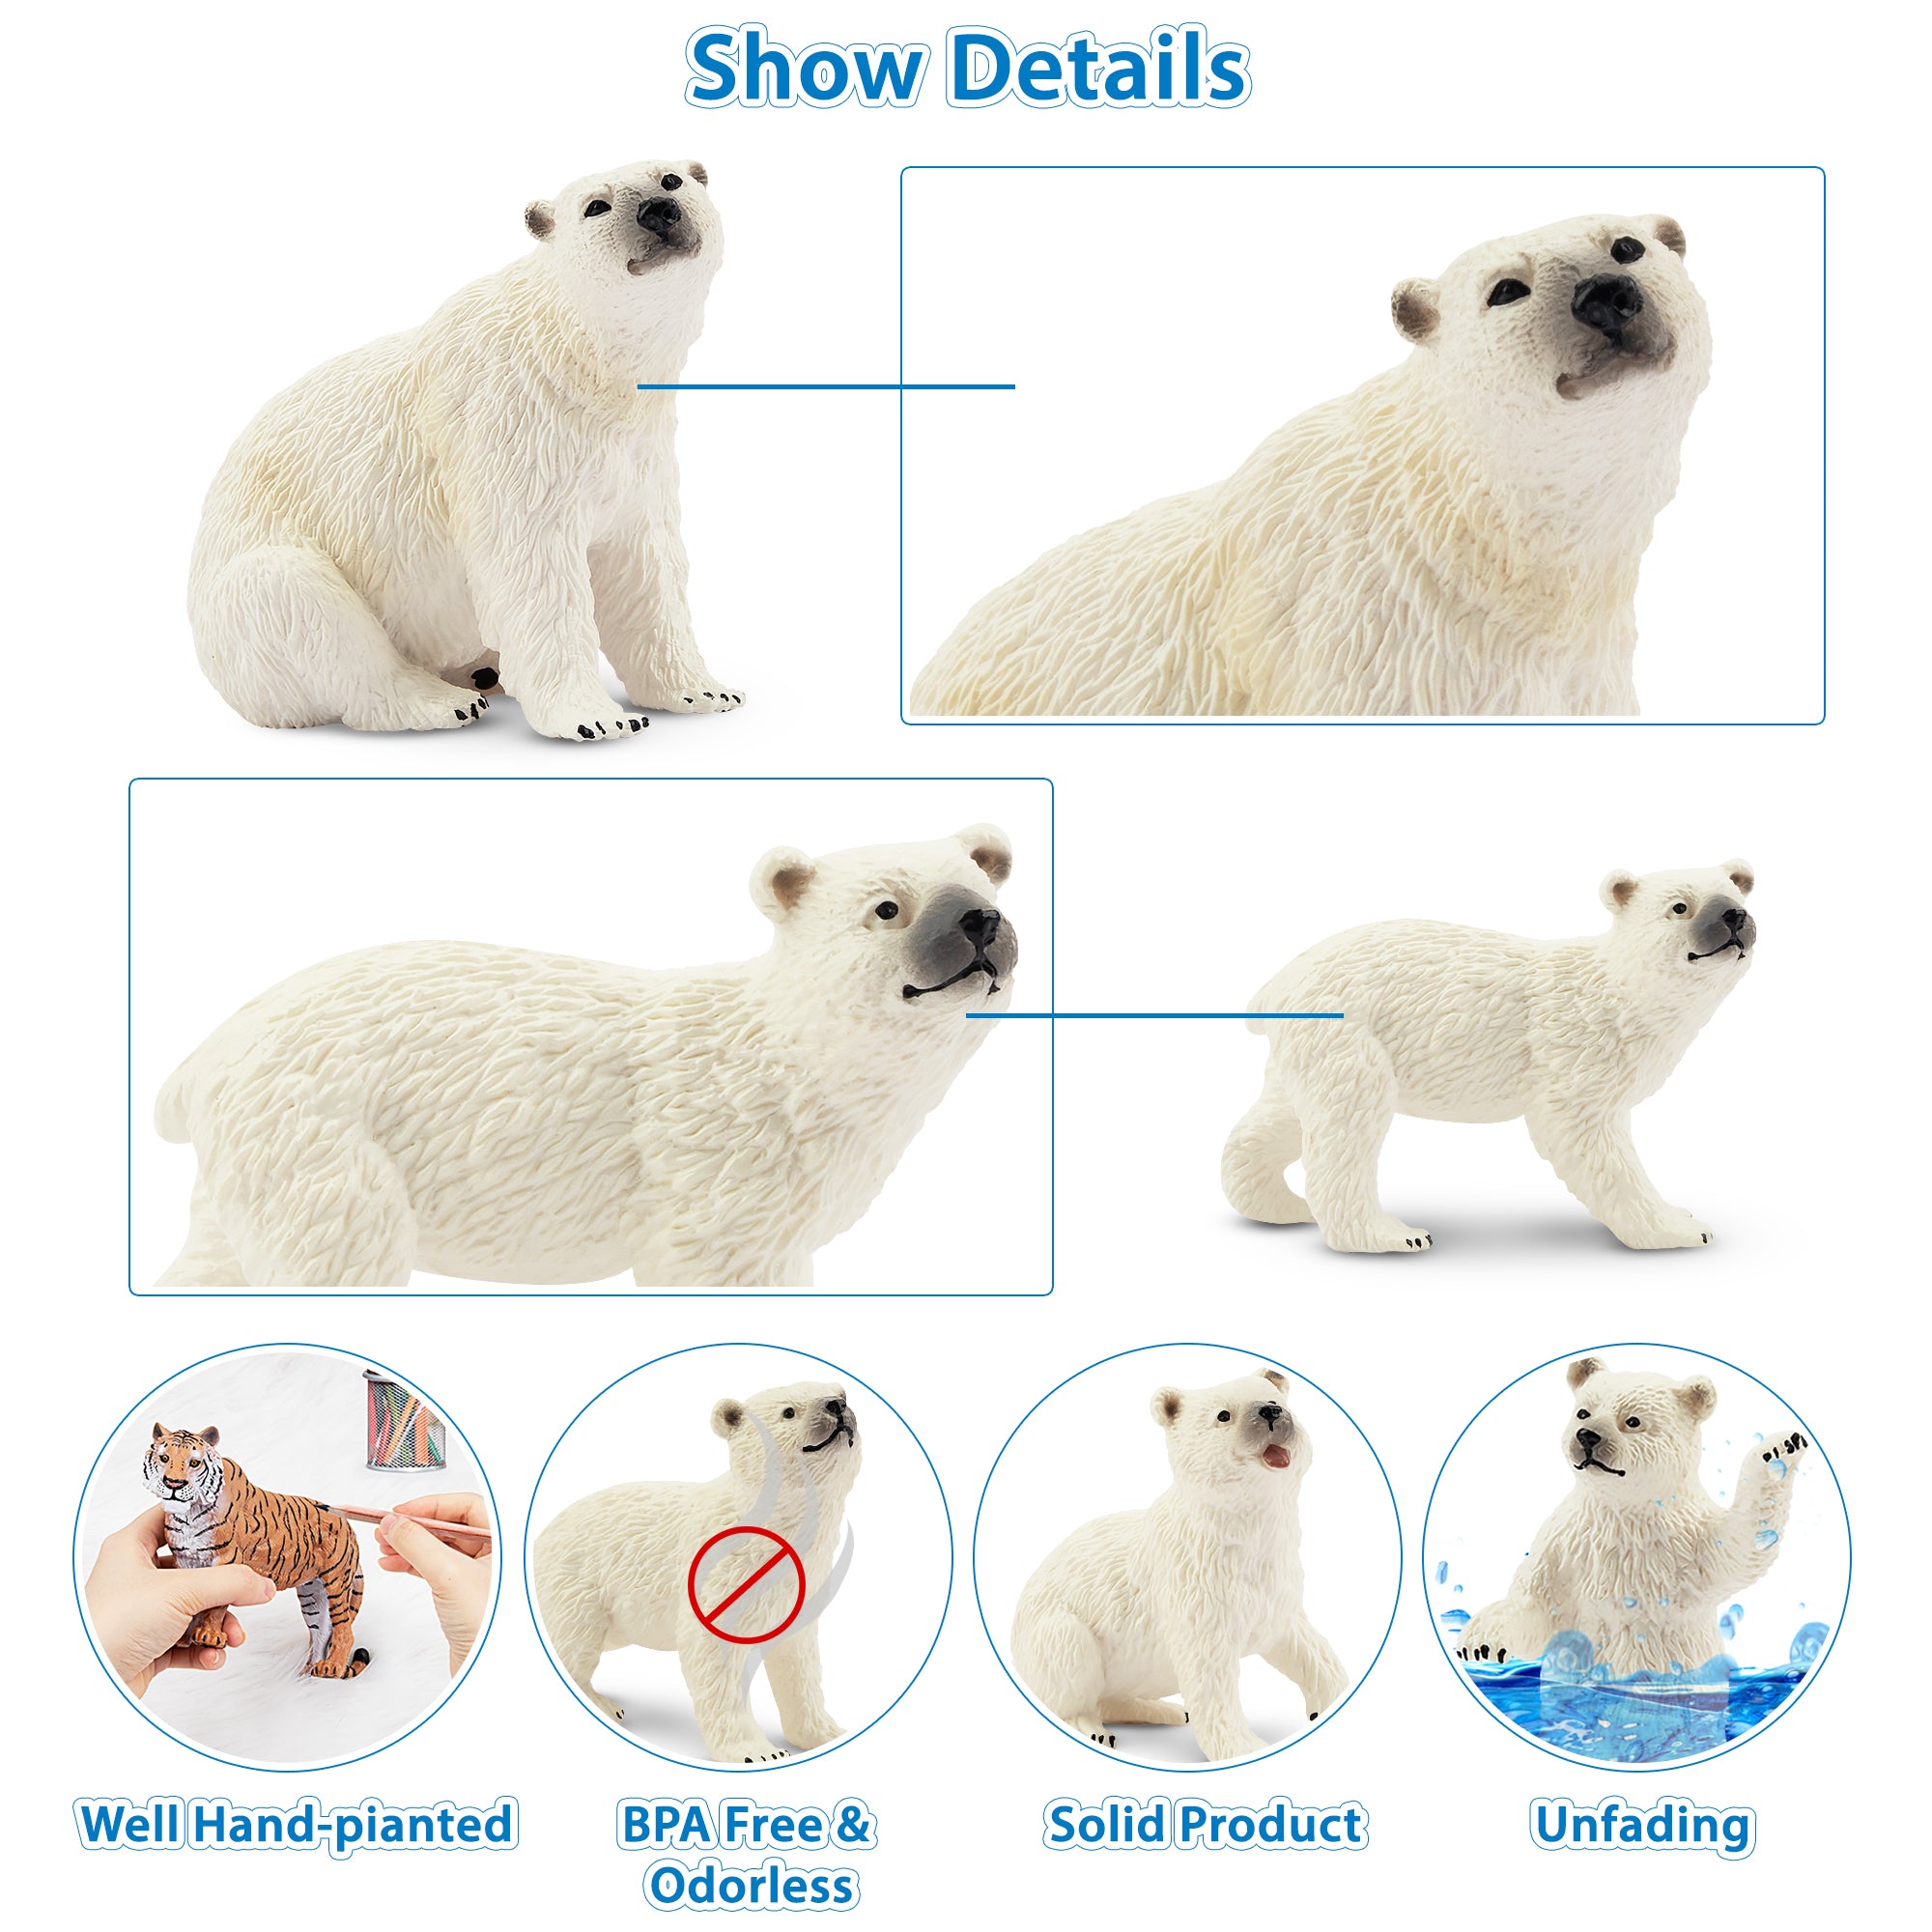 6-Piece Polar Bear Family Figurines Playset with Adult & Baby Polar Bear-detail